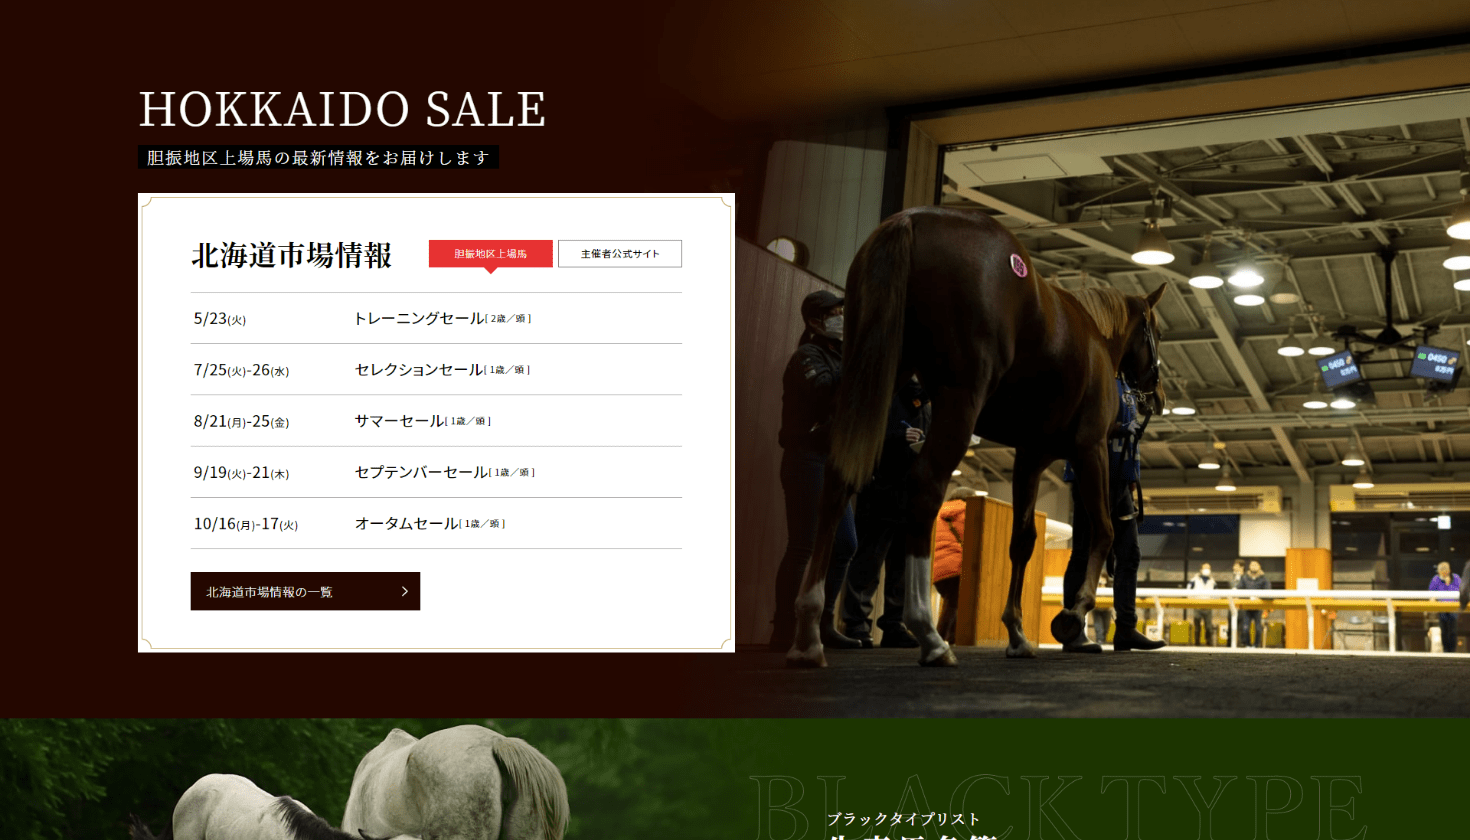 「胆振軽種馬農業協同組合」様サイトのページ画像2